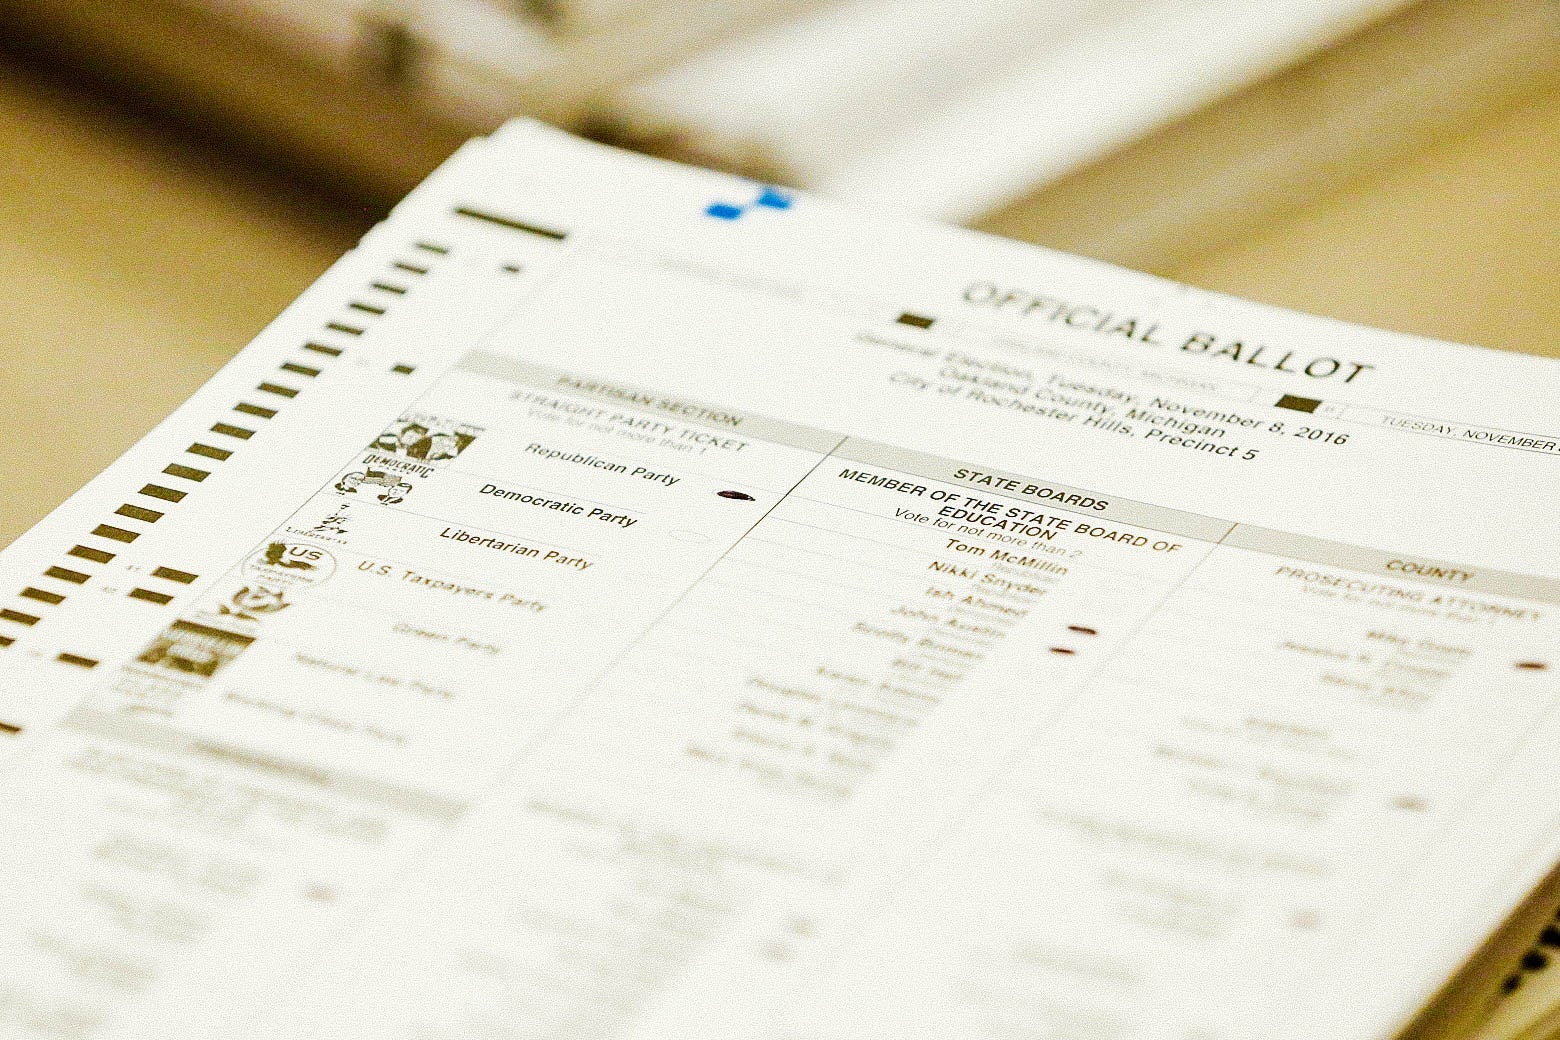 A ballot sheet